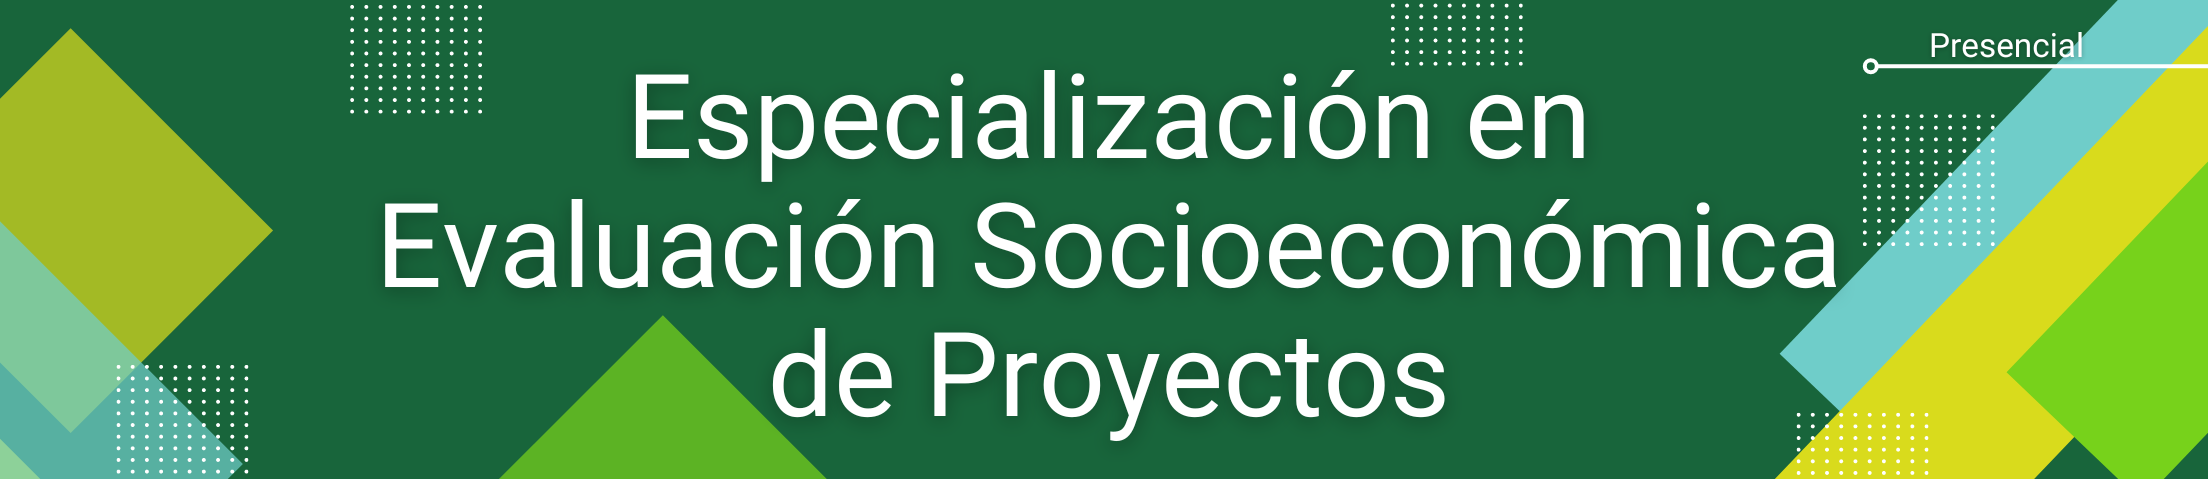 especializacion en evaluacion socioeconomica